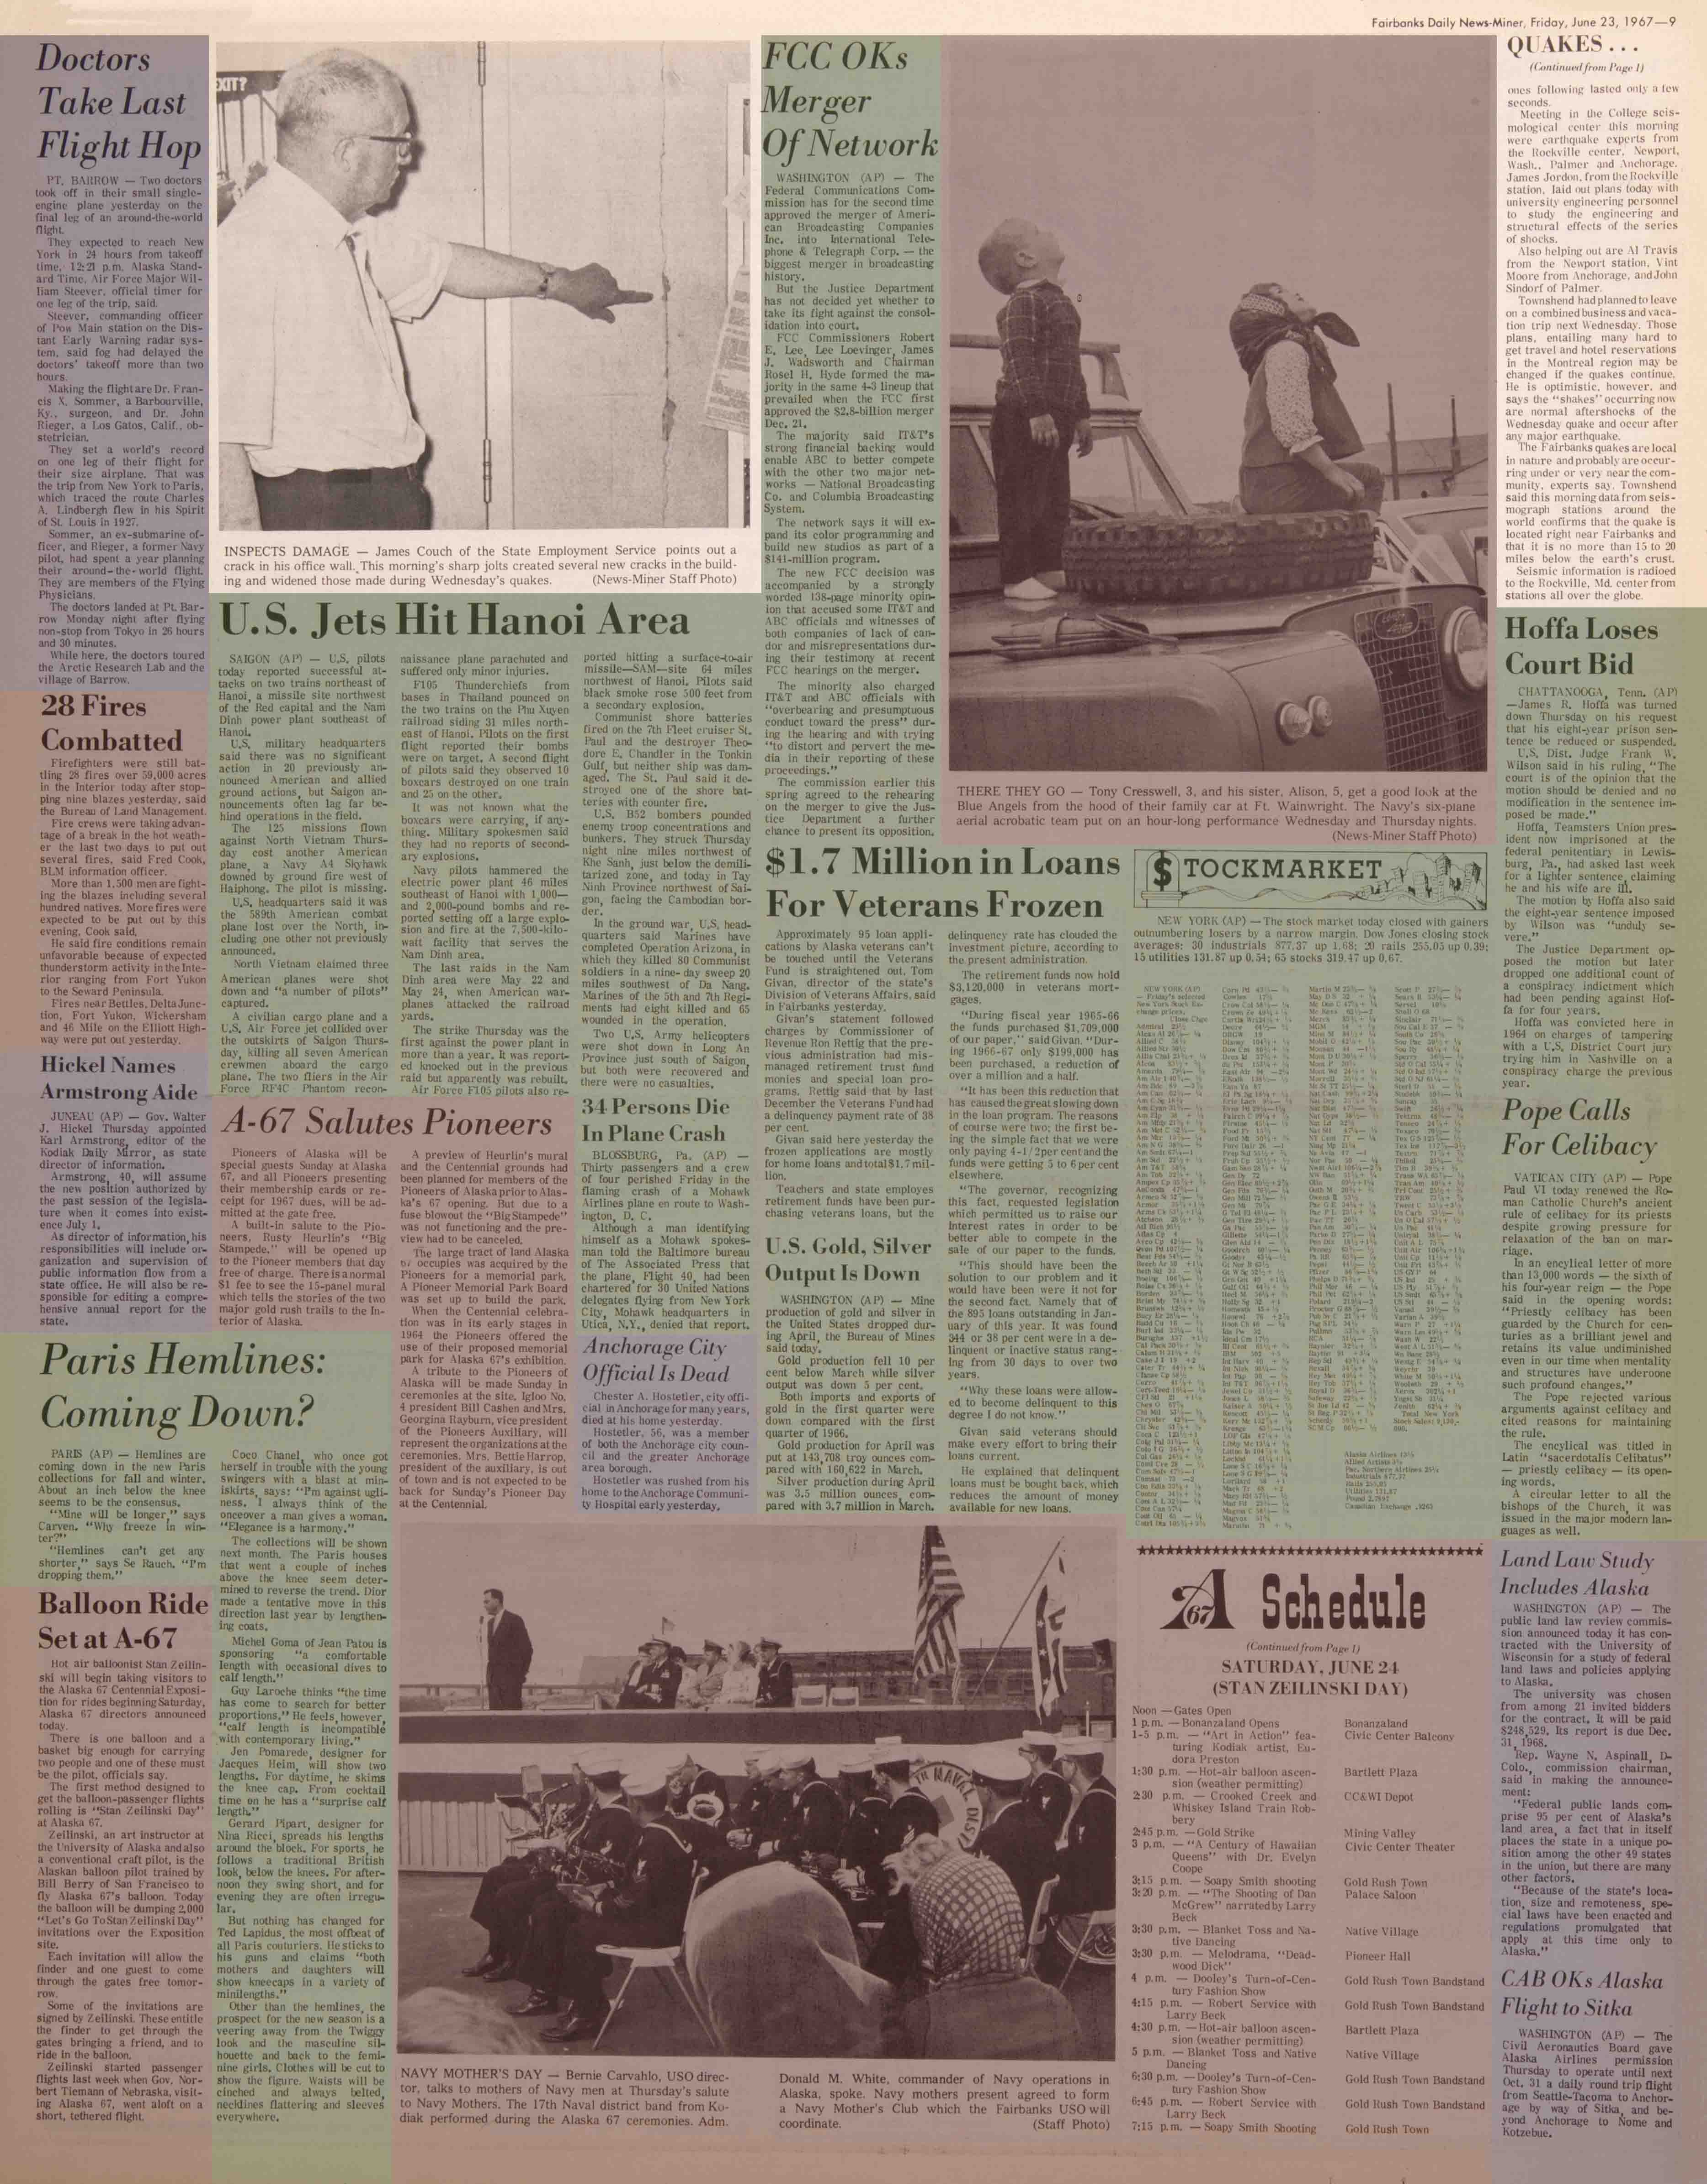 1967 June 23, Fairbanks Daily News-Miner (pg 9)